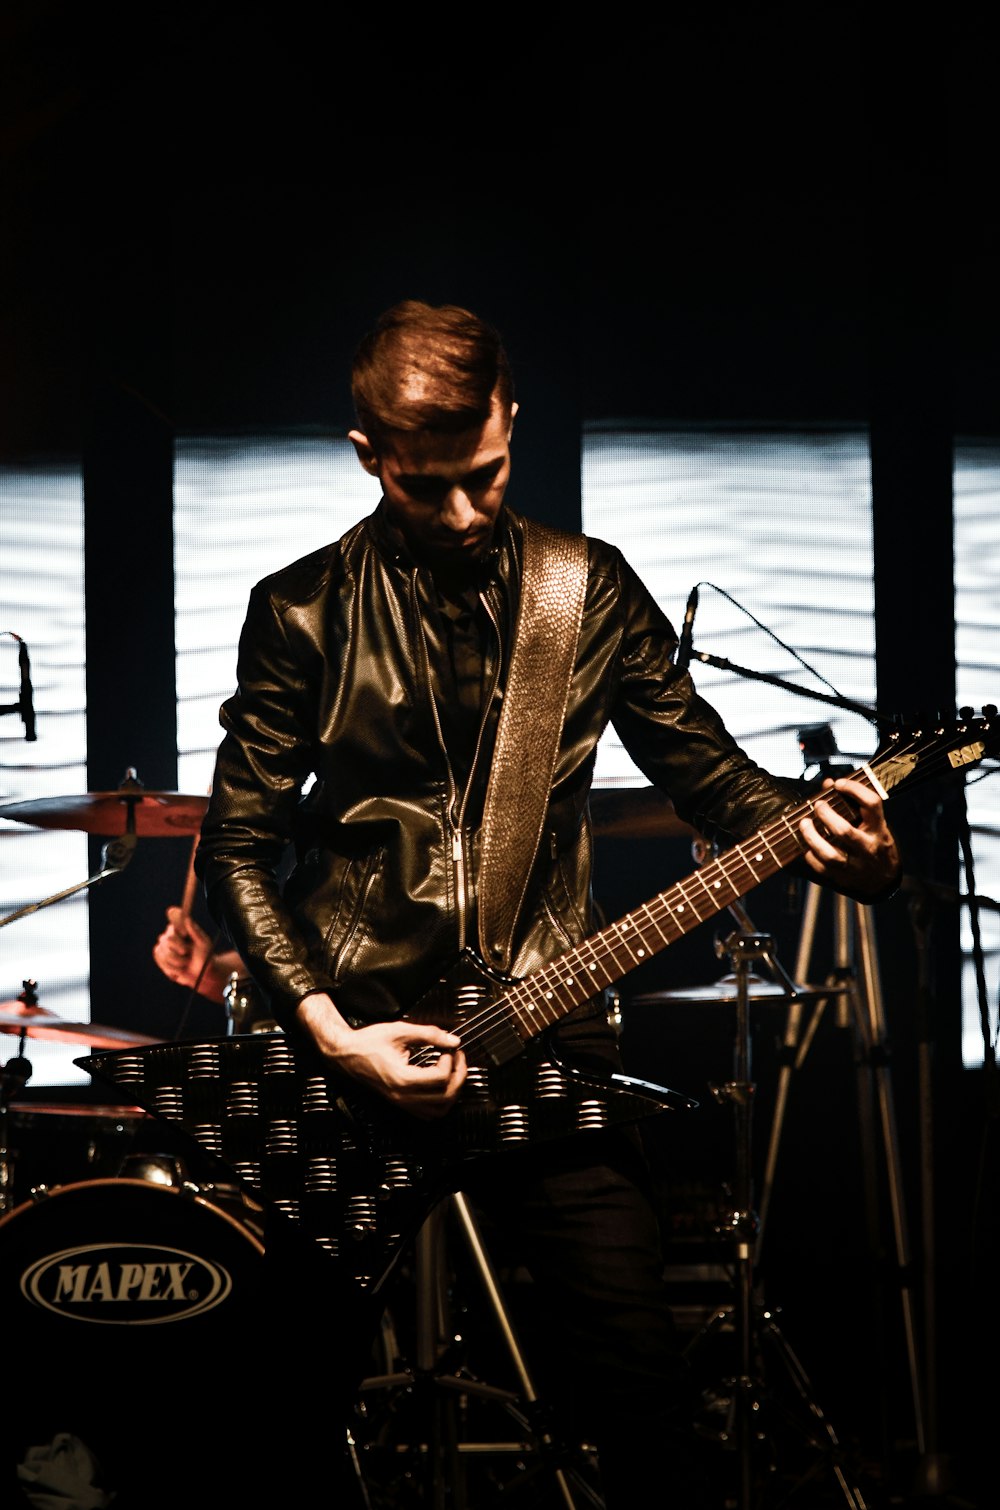 Mann in schwarzer Lederjacke spielt Gitarre